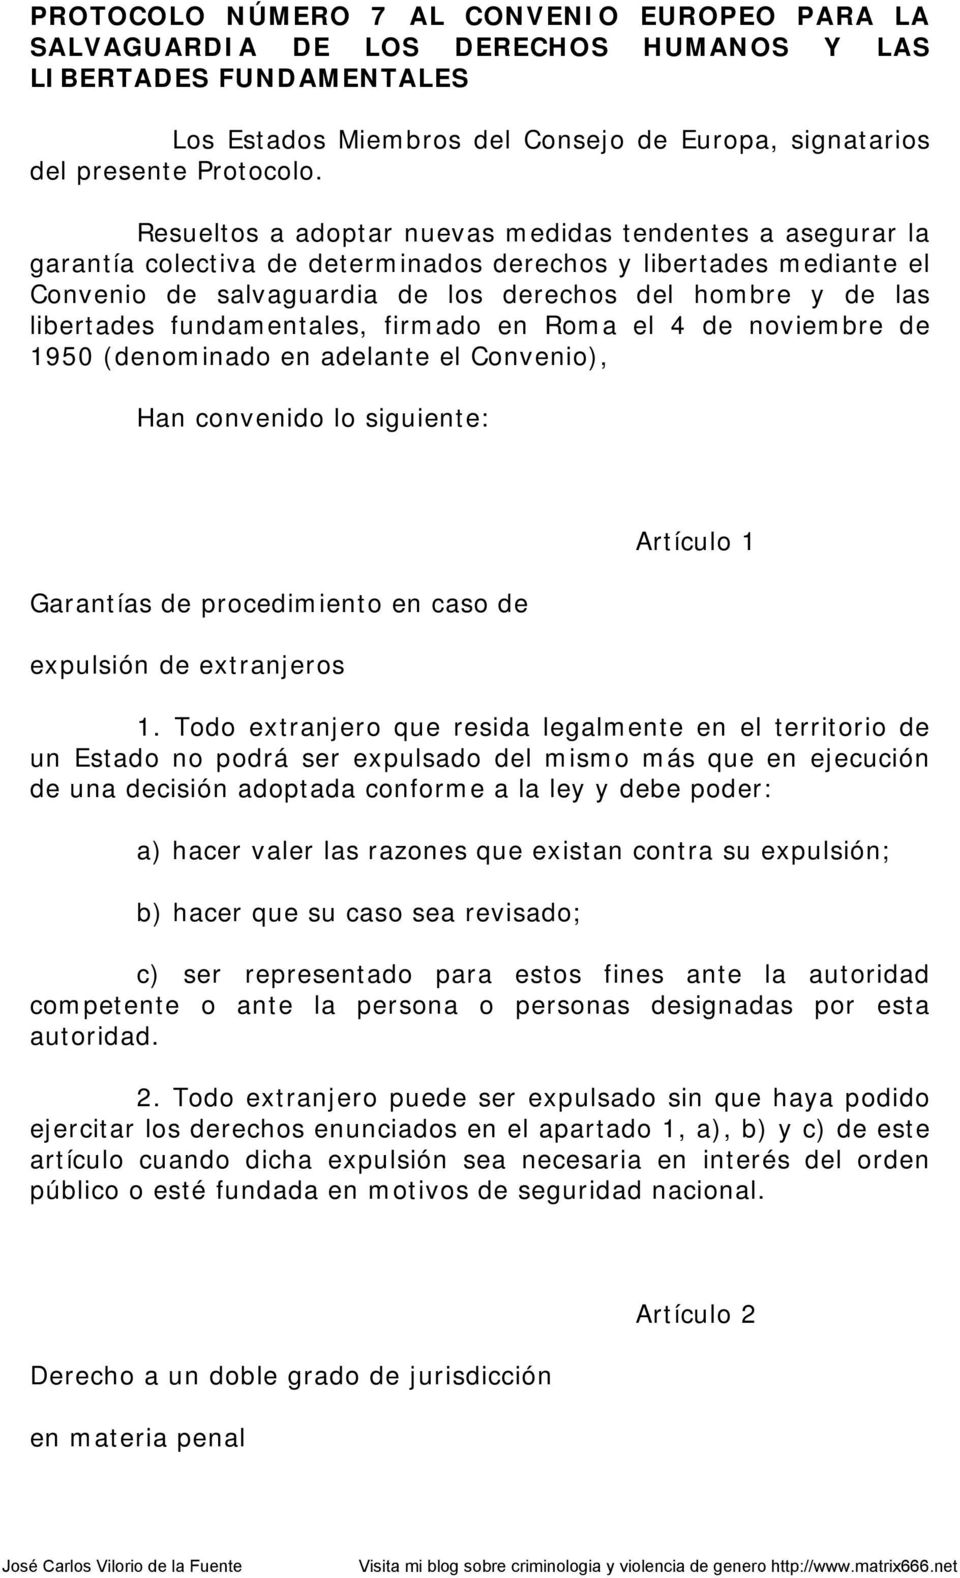 fundamentales, firmado en Roma el 4 de noviembre de 1950 (denominado en adelante el Convenio), Han convenido lo siguiente: Garantías de procedimiento en caso de expulsión de extranjeros Artículo 1 1.